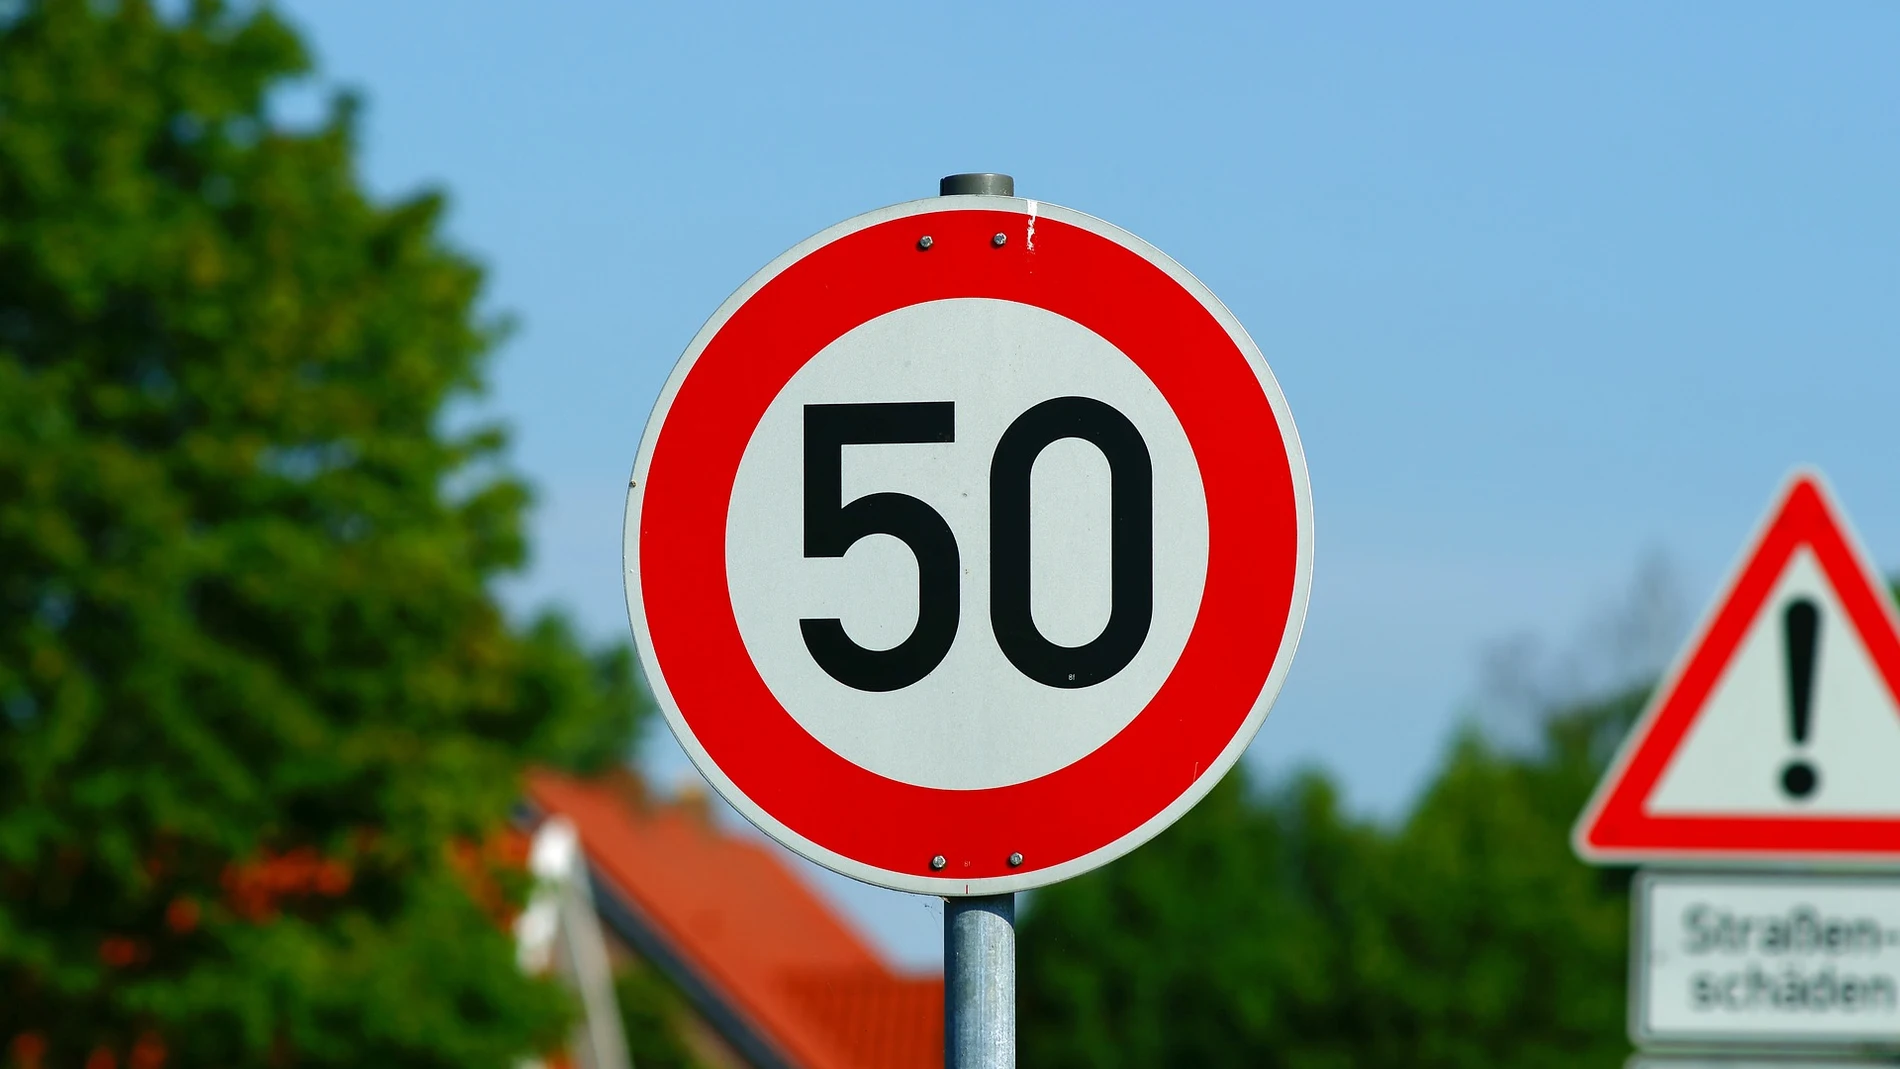 ¿Por qué es importante respetar siempre los límites de velocidad establecidos?